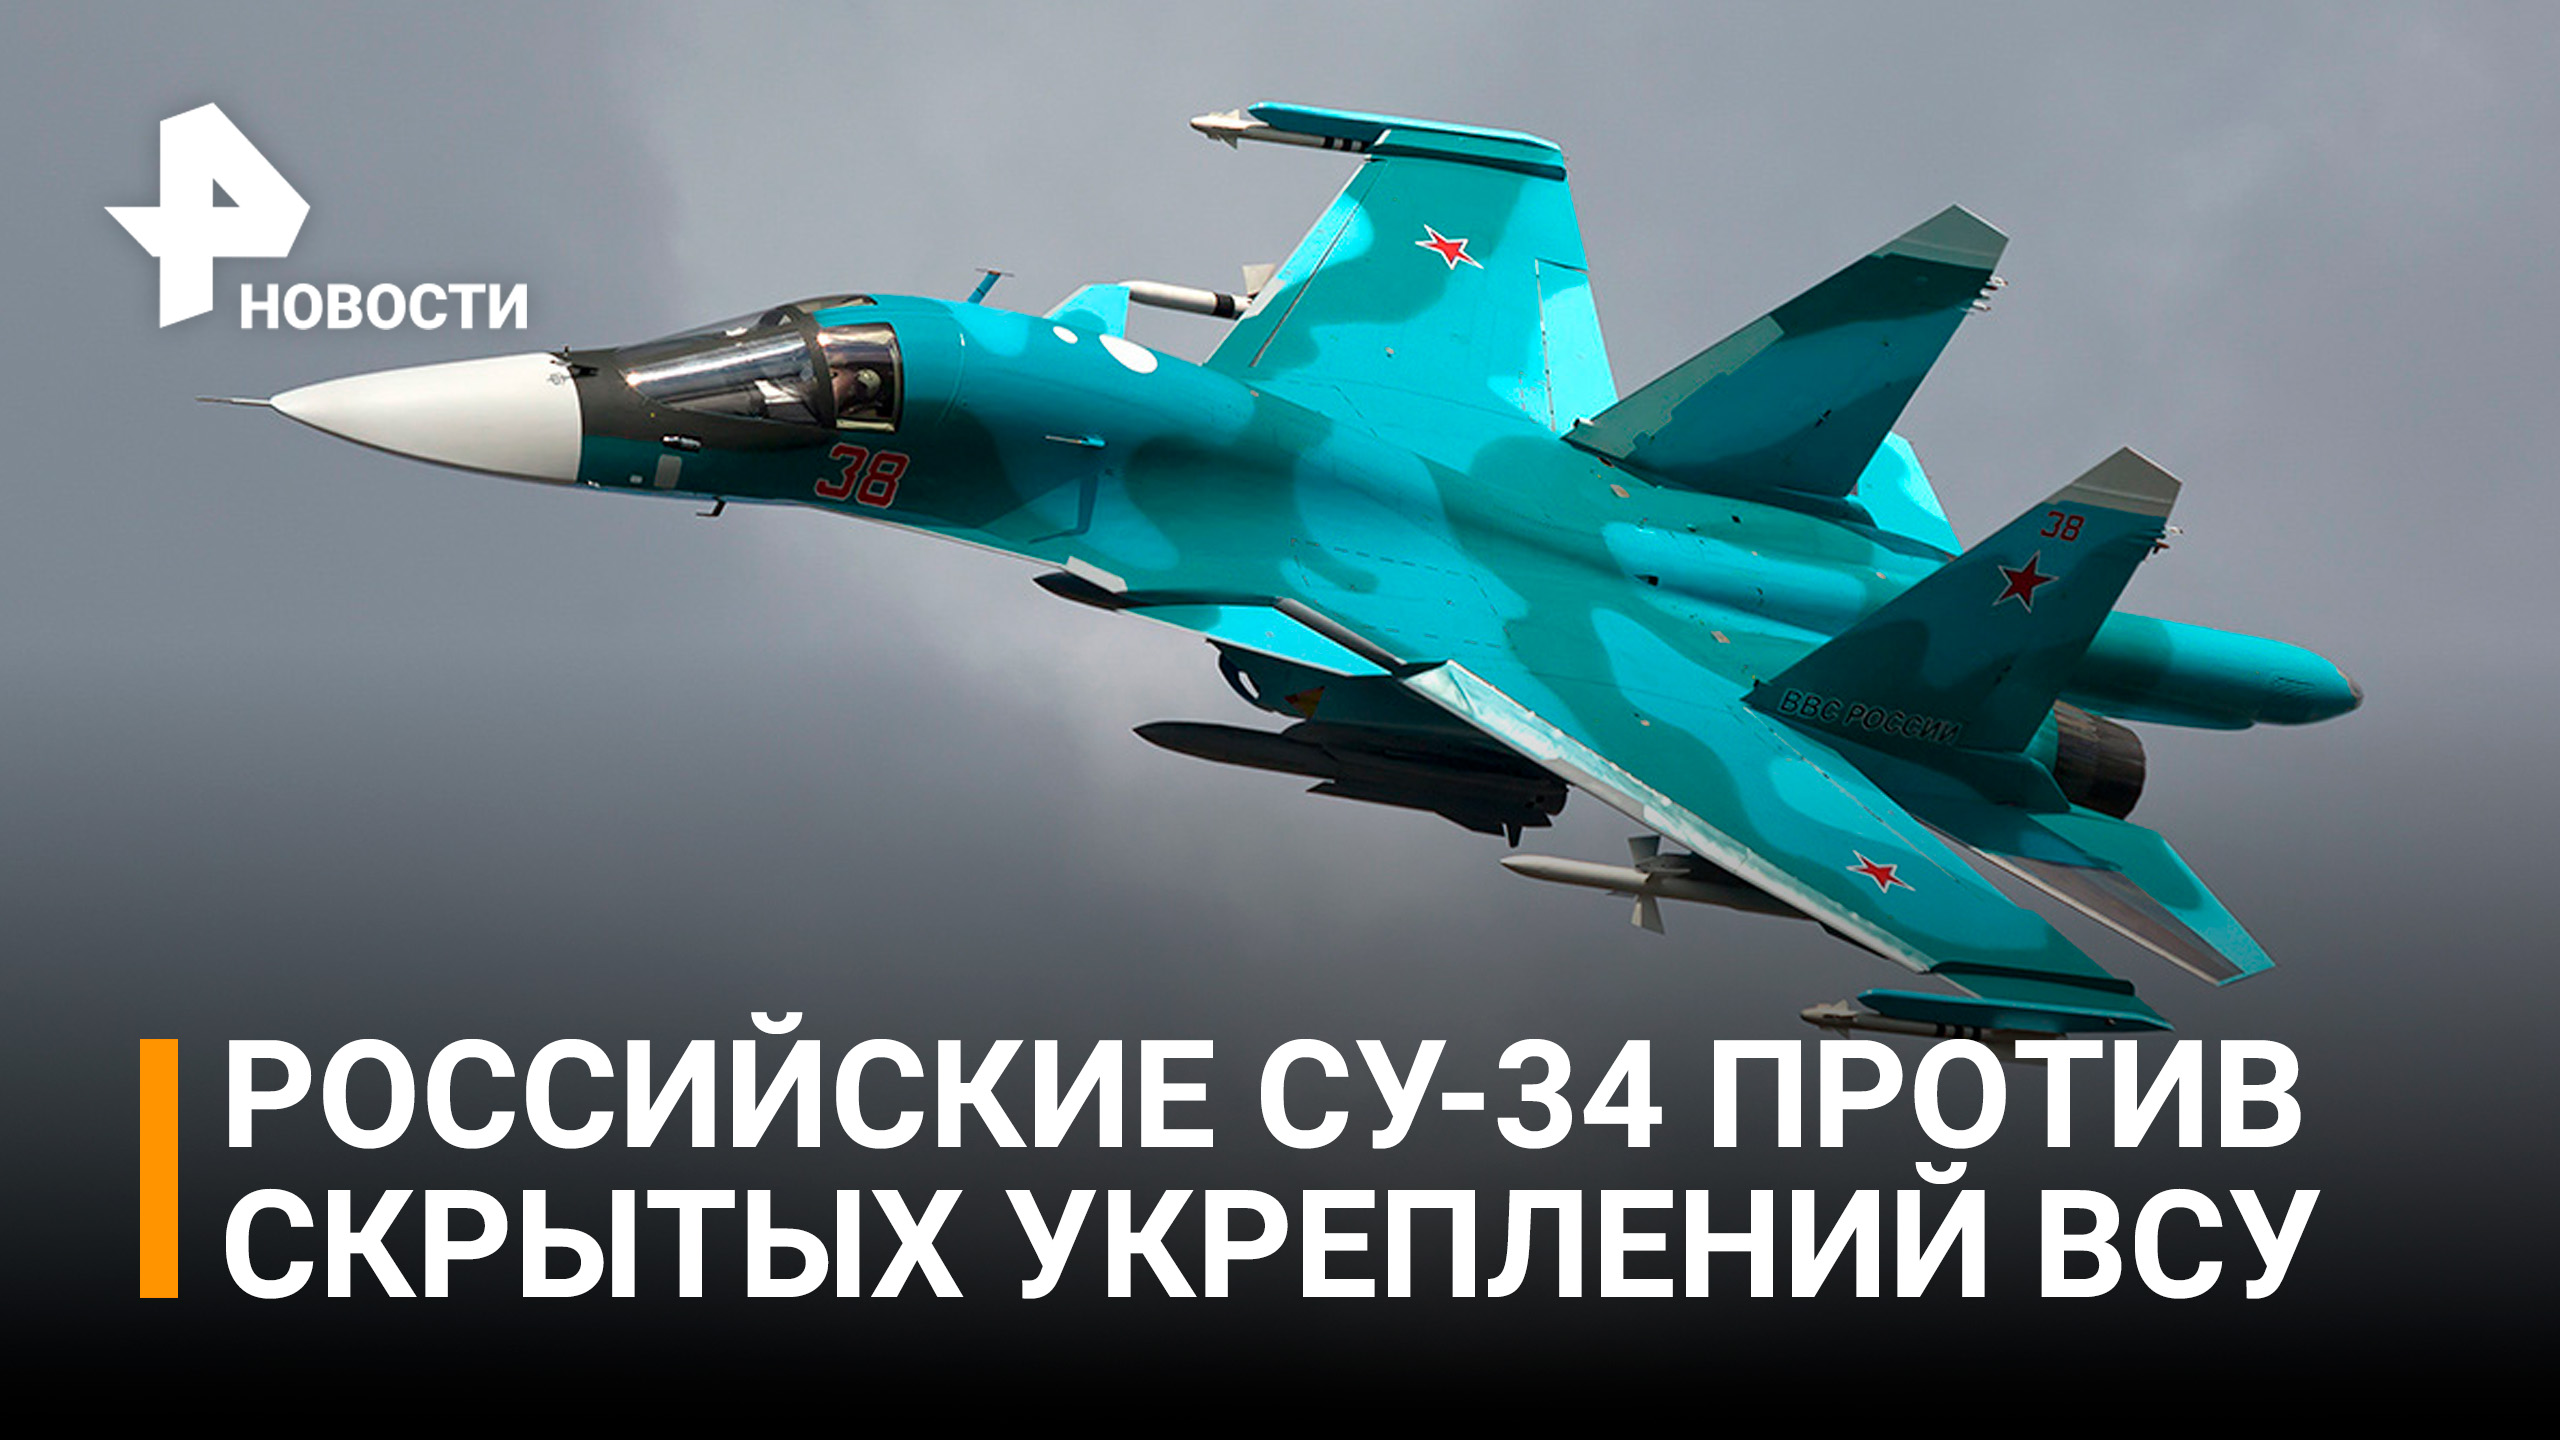 Российские истребители-бомбардировщики Су-34 уничтожили скрытые укрепления ВСУ / РЕН Новости